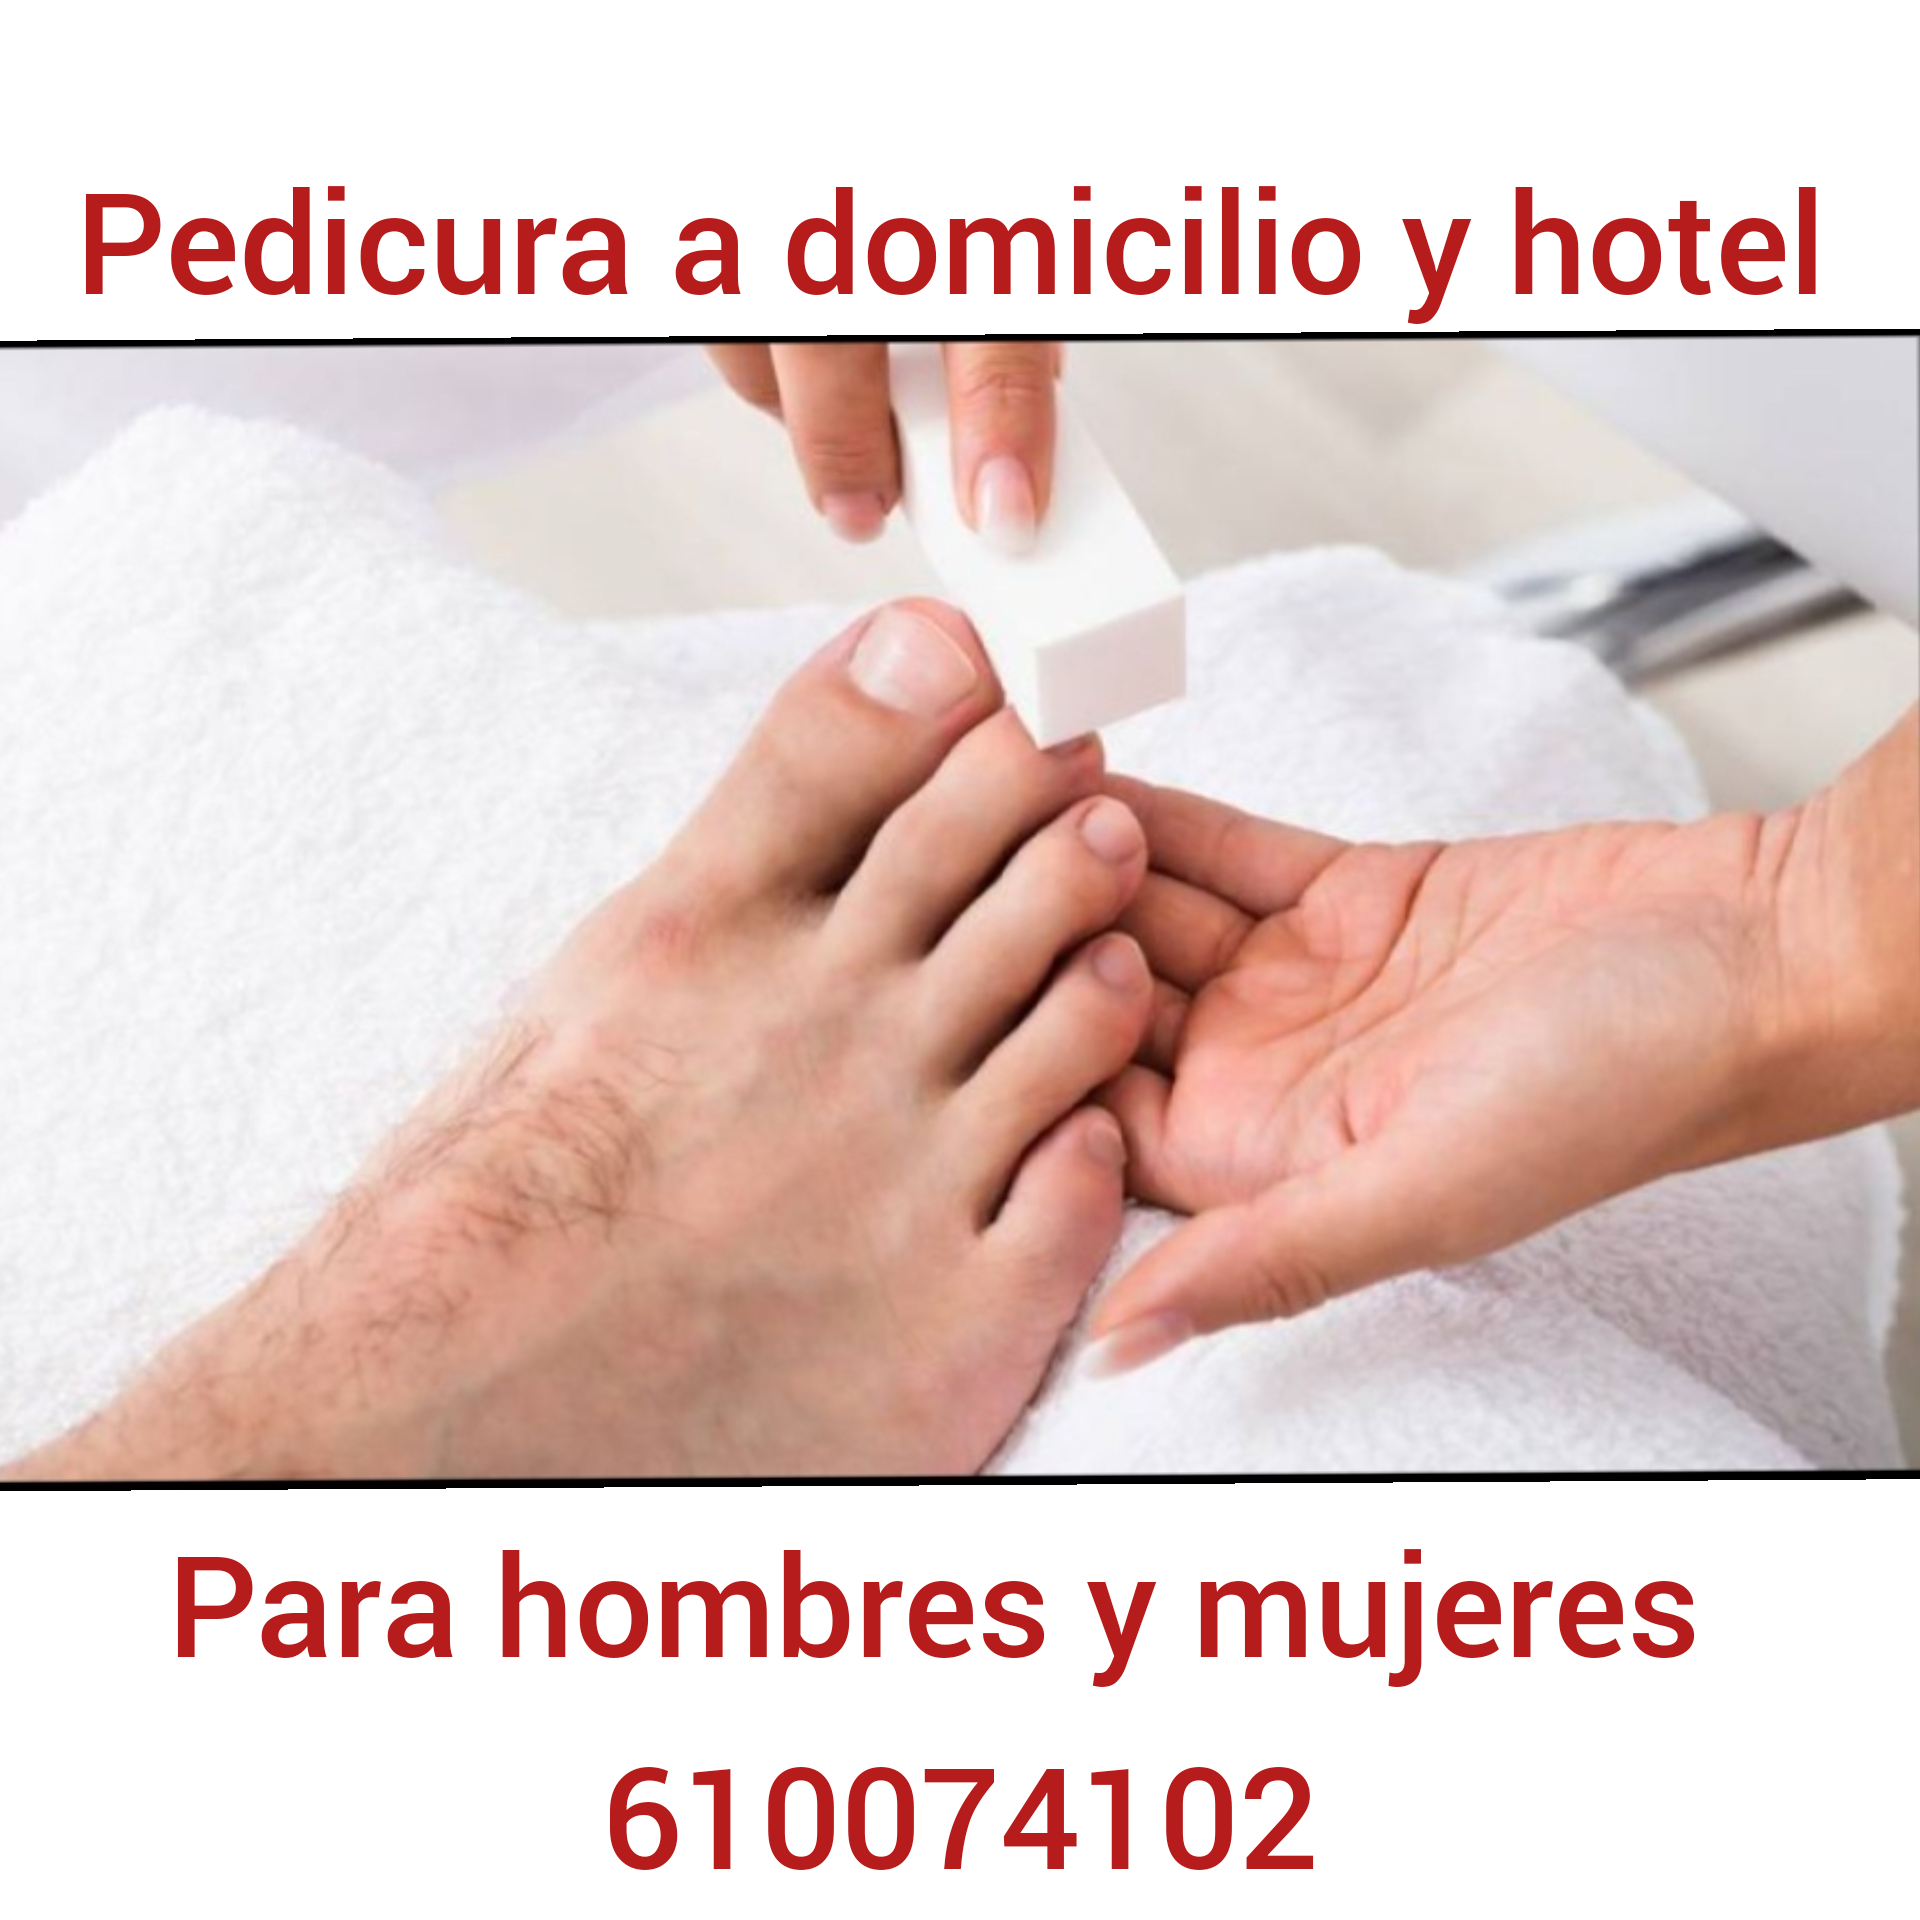 masajistas-terapeuticos madrid Pedicura y masajes domicilio hotel